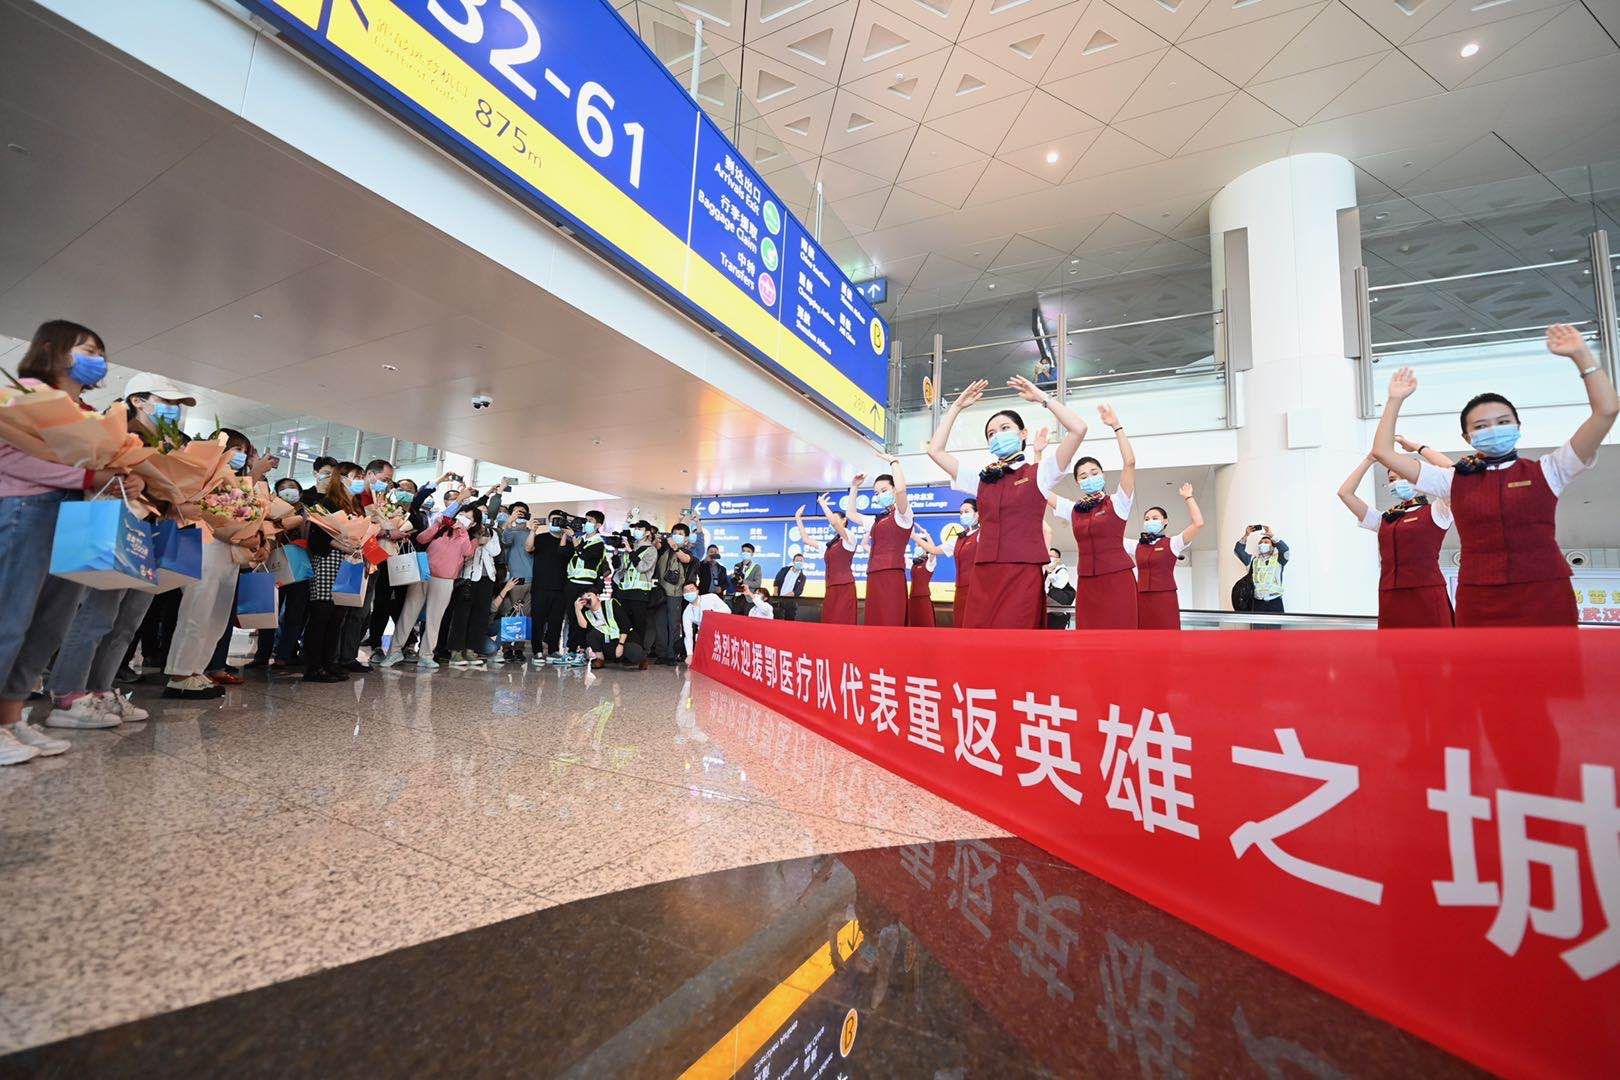  抗疫英雄代表乘坐“冬奥冰雪号”航班重返武汉。新京报记者 陶冉 摄